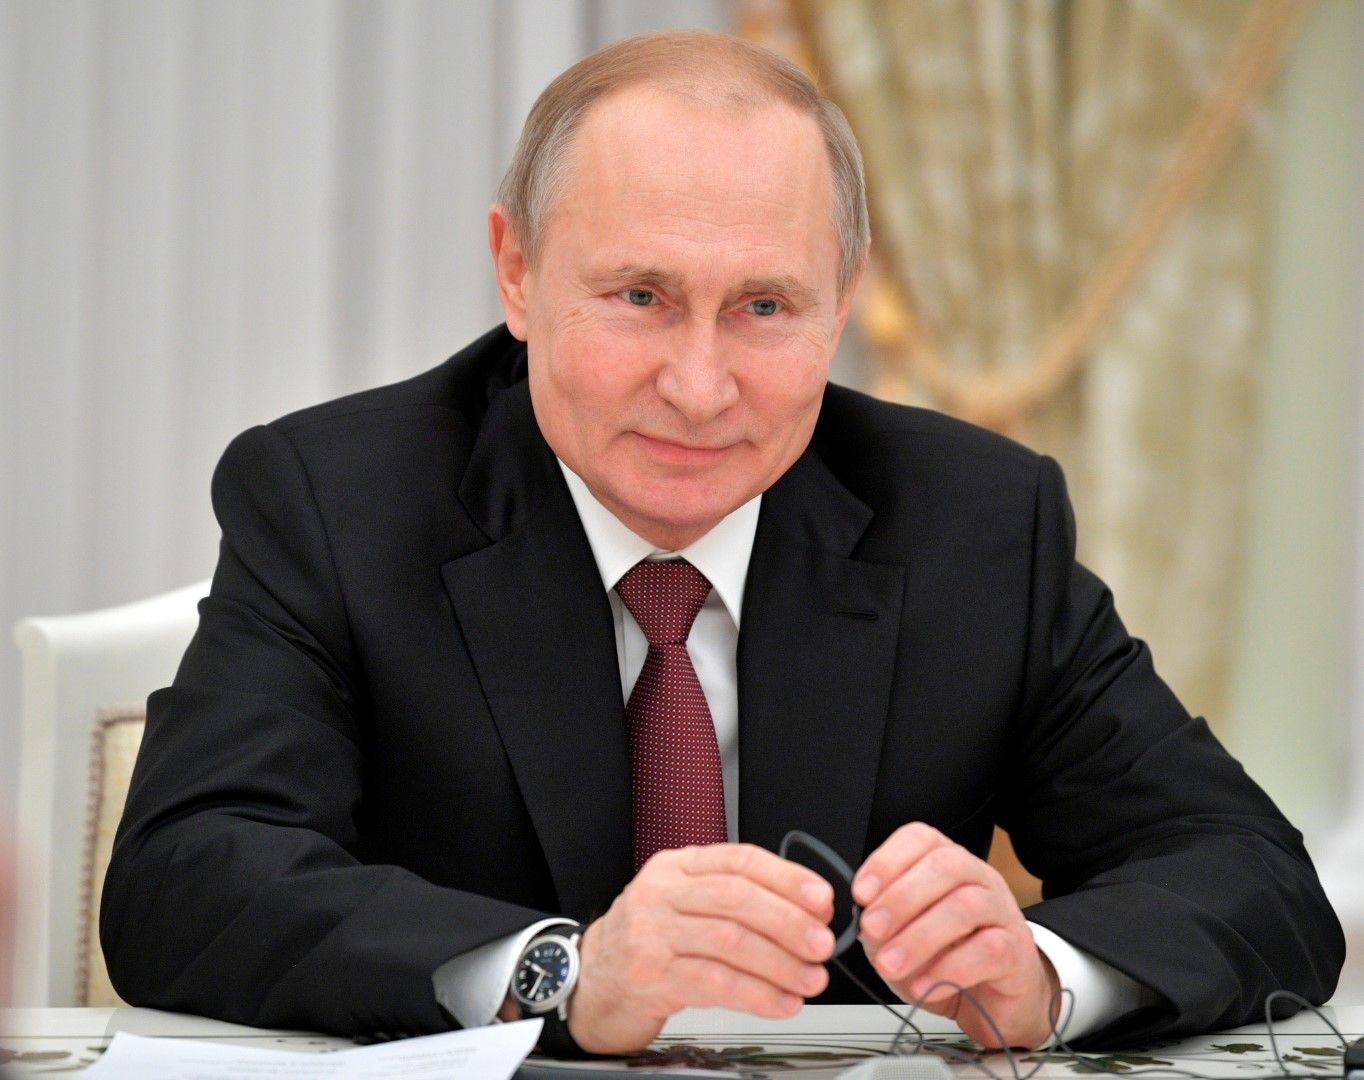 Президентът Путин няма мнение по въпроса, каза говорителят на Кремъл Дмитрий Песков